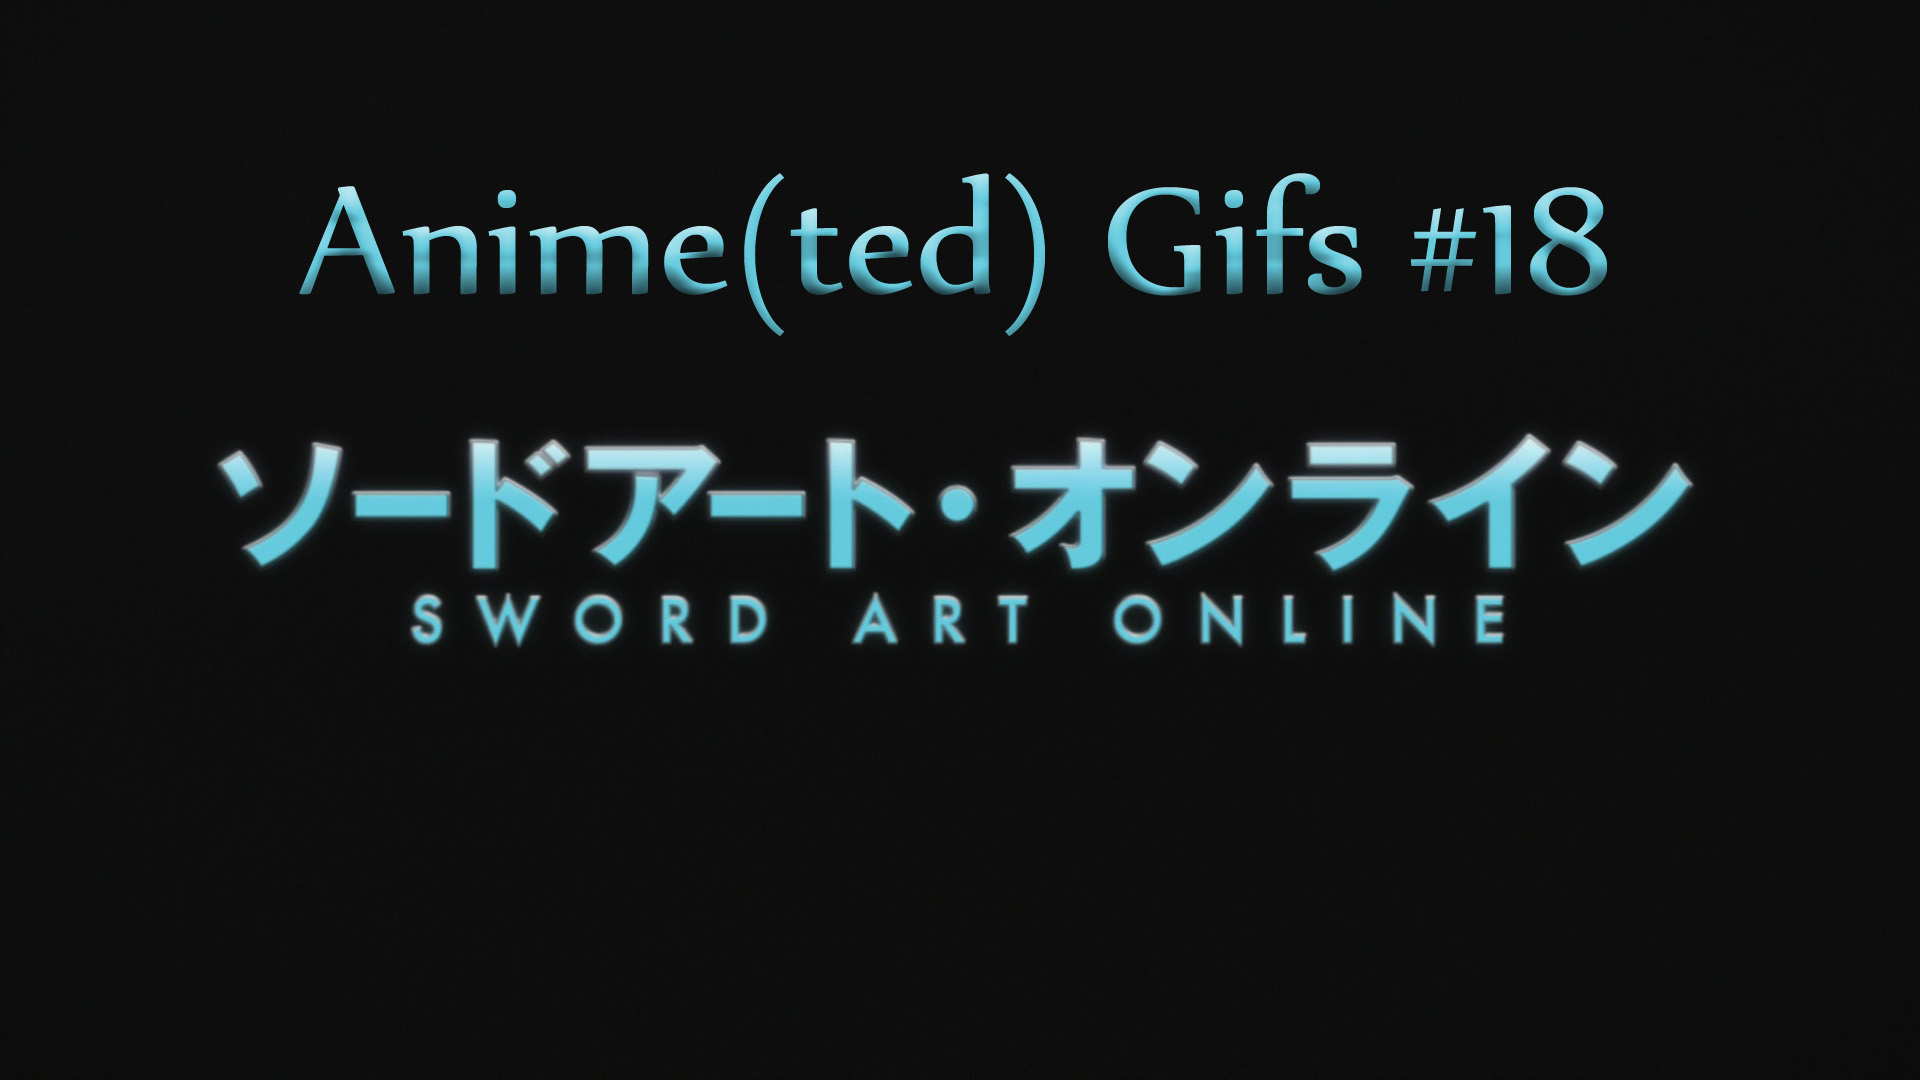 Anime(ted) Gifs #18 - Sword Art Online